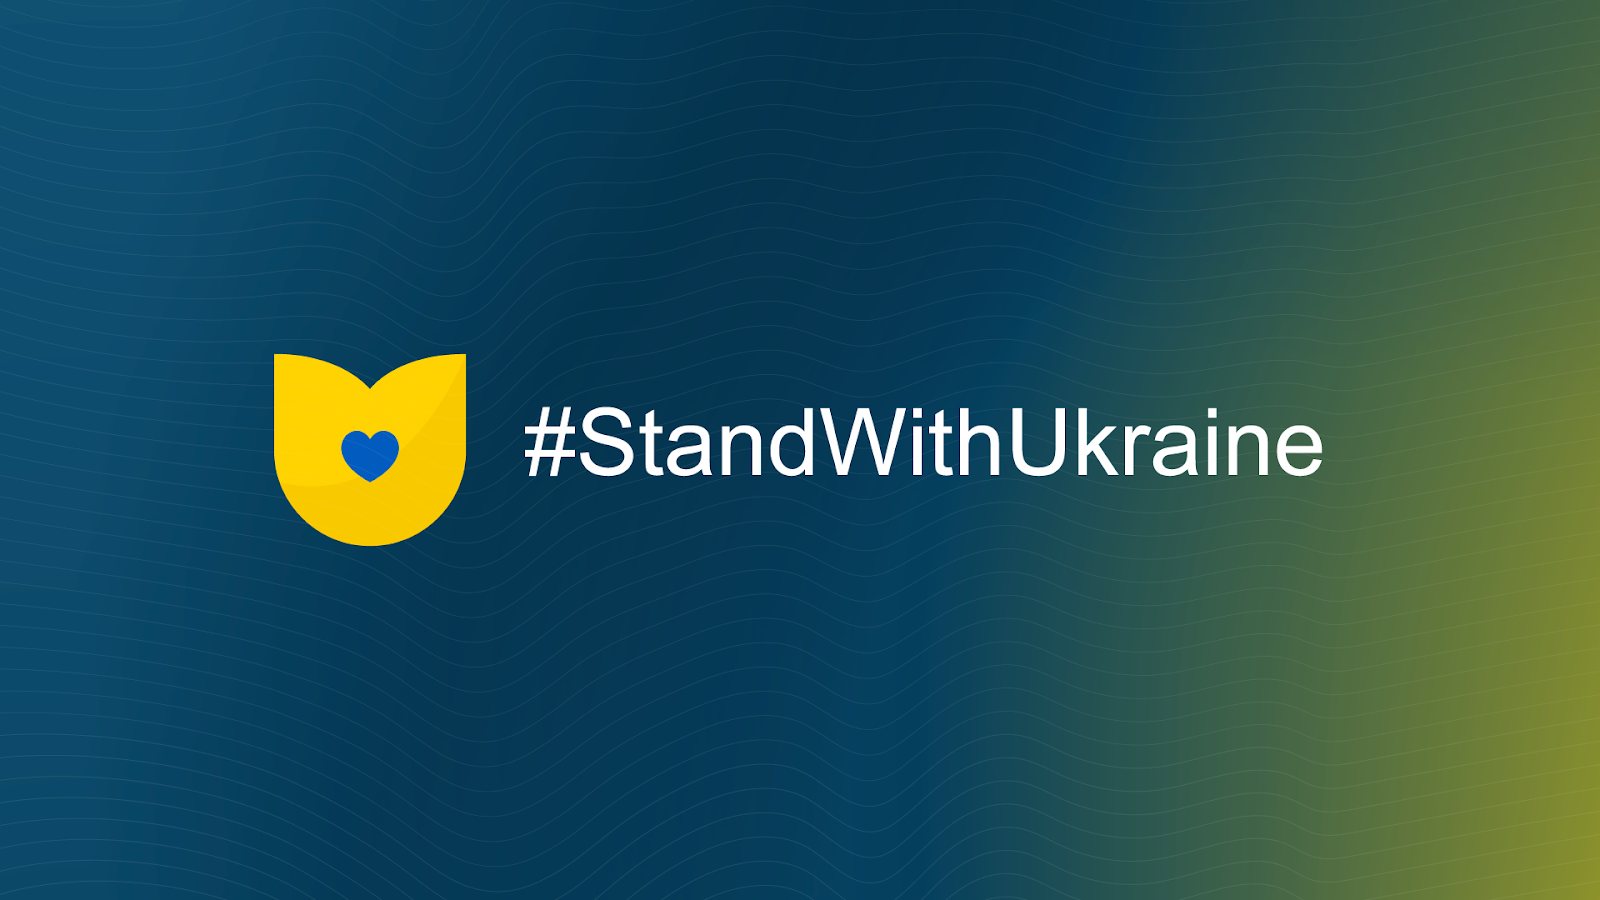 Залучення міжнародної спільноти до підтримки України під час війни є вкрай важливим для перемоги.